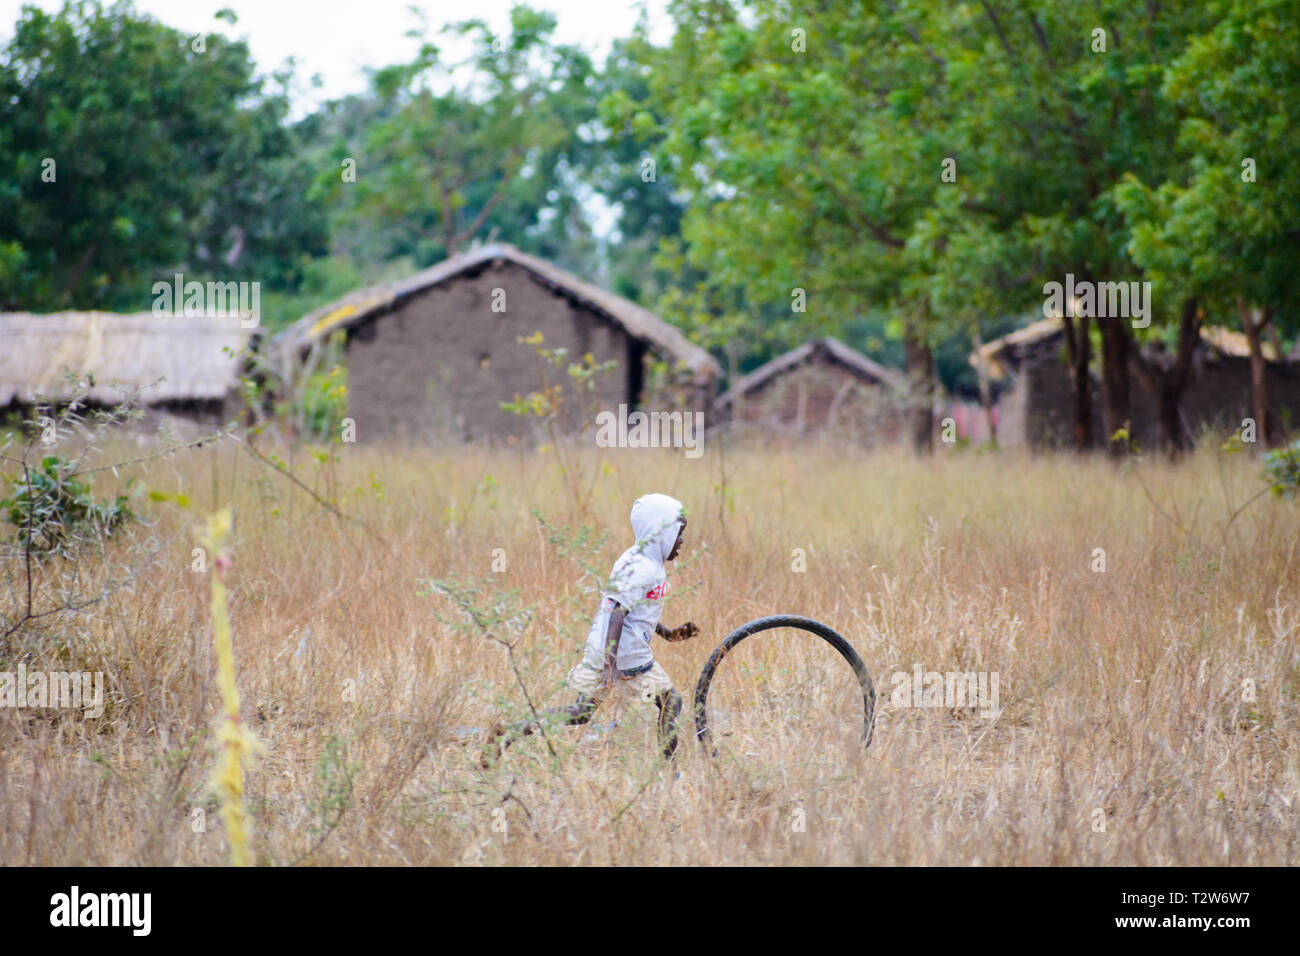 Garçon malawien chasse roue de bicyclette à travers son village Banque D'Images